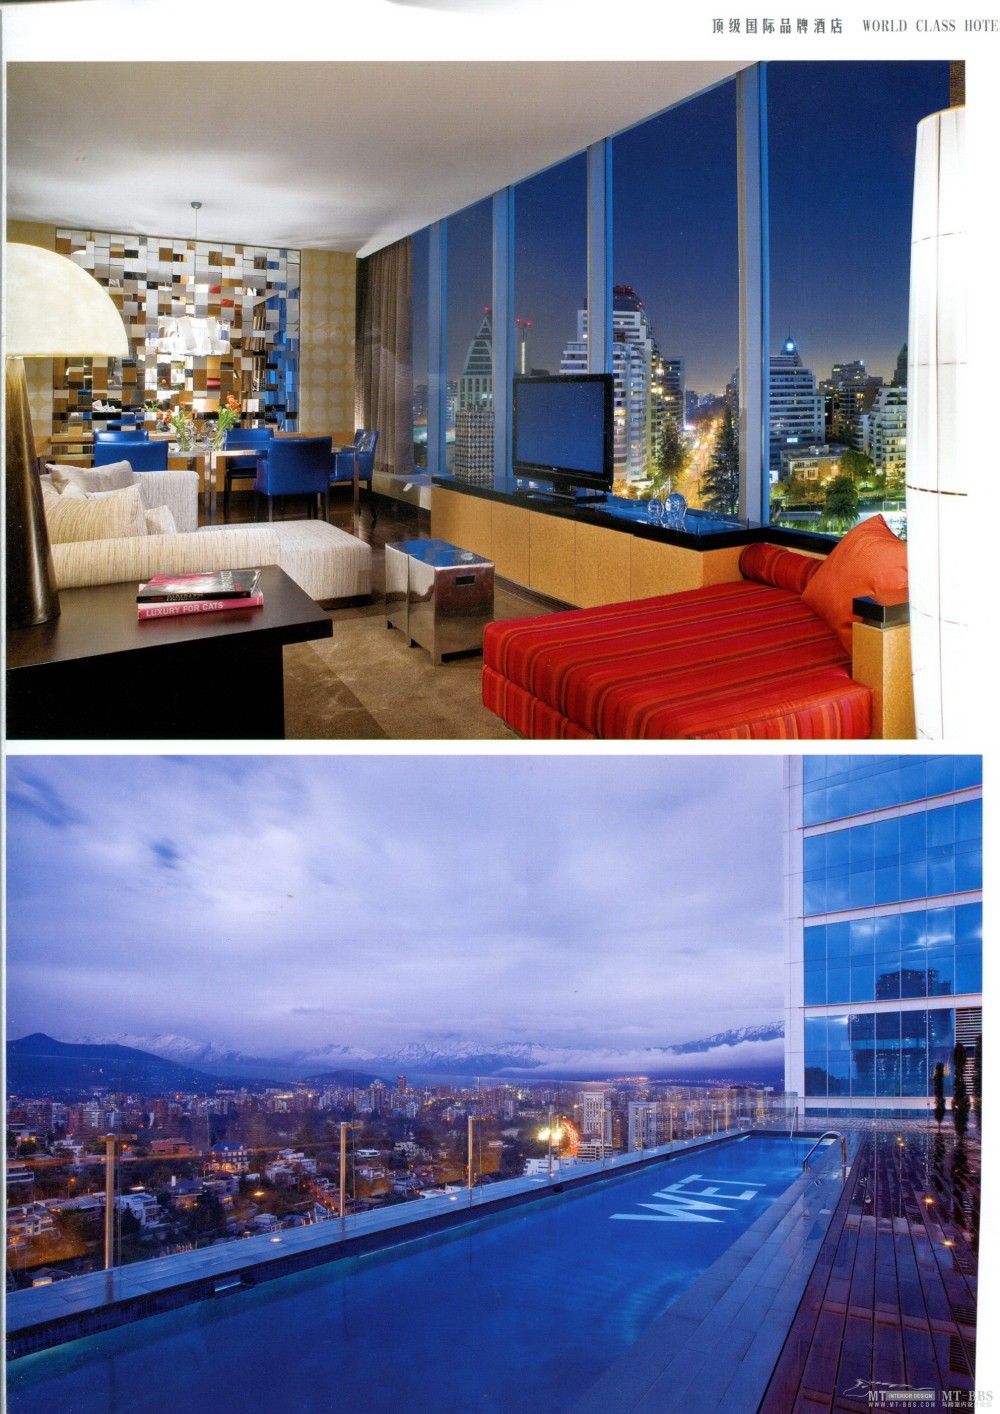 高清 WORLD CLASS HOTEL 顶级国际品牌酒店(下)--j 381M_img621.jpg